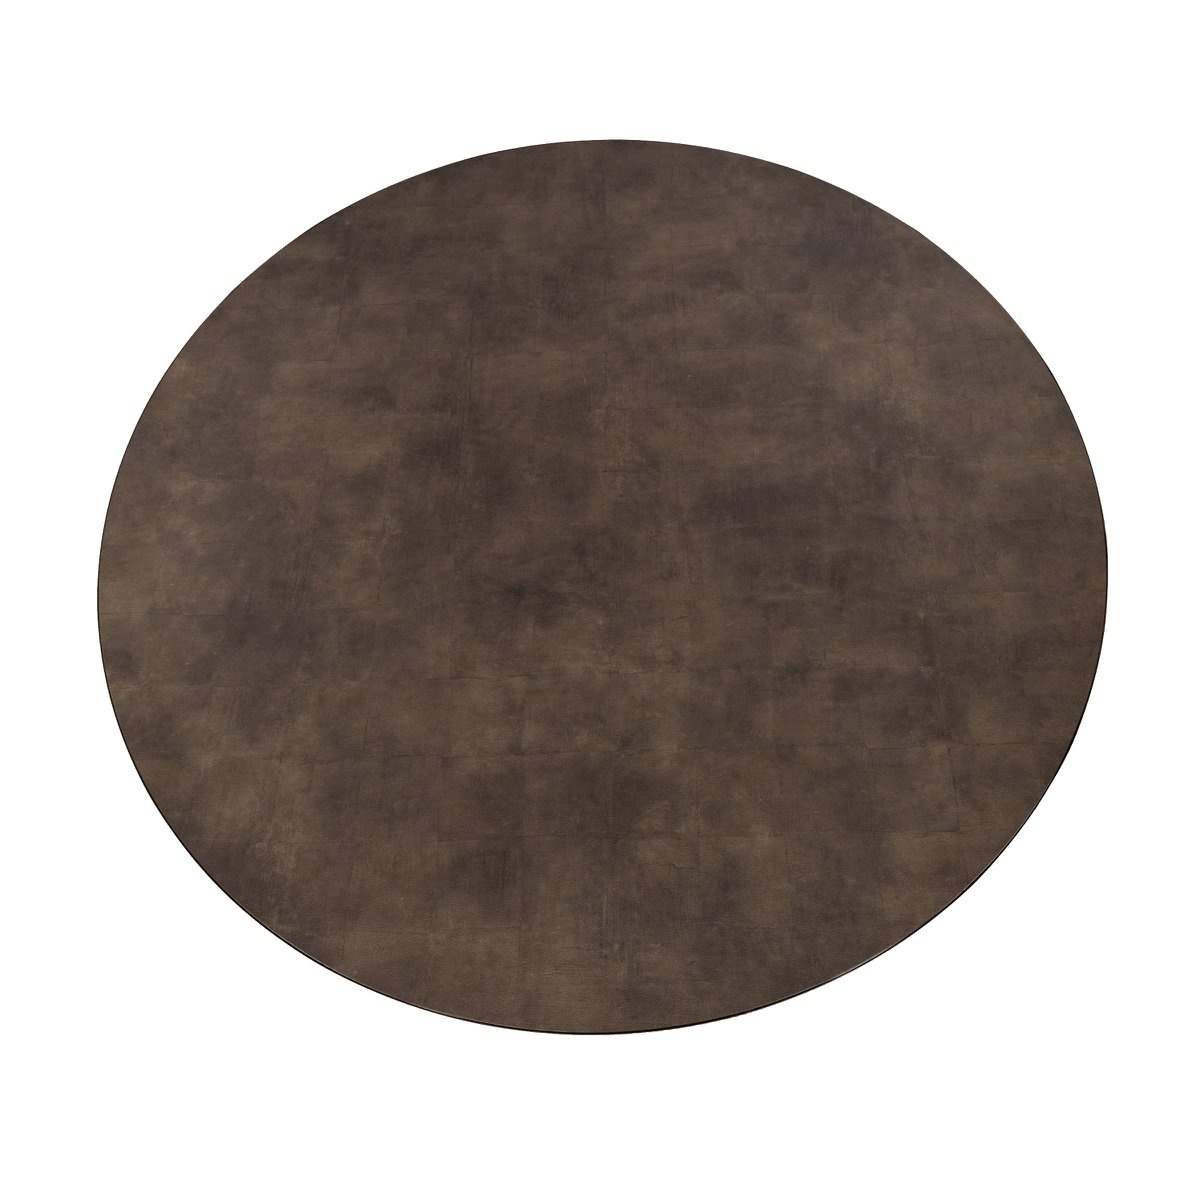 KantoormeubelenPlus Stalux Ronde eettafel 'Daan' 135cm, kleur zwart / lederlook bruin